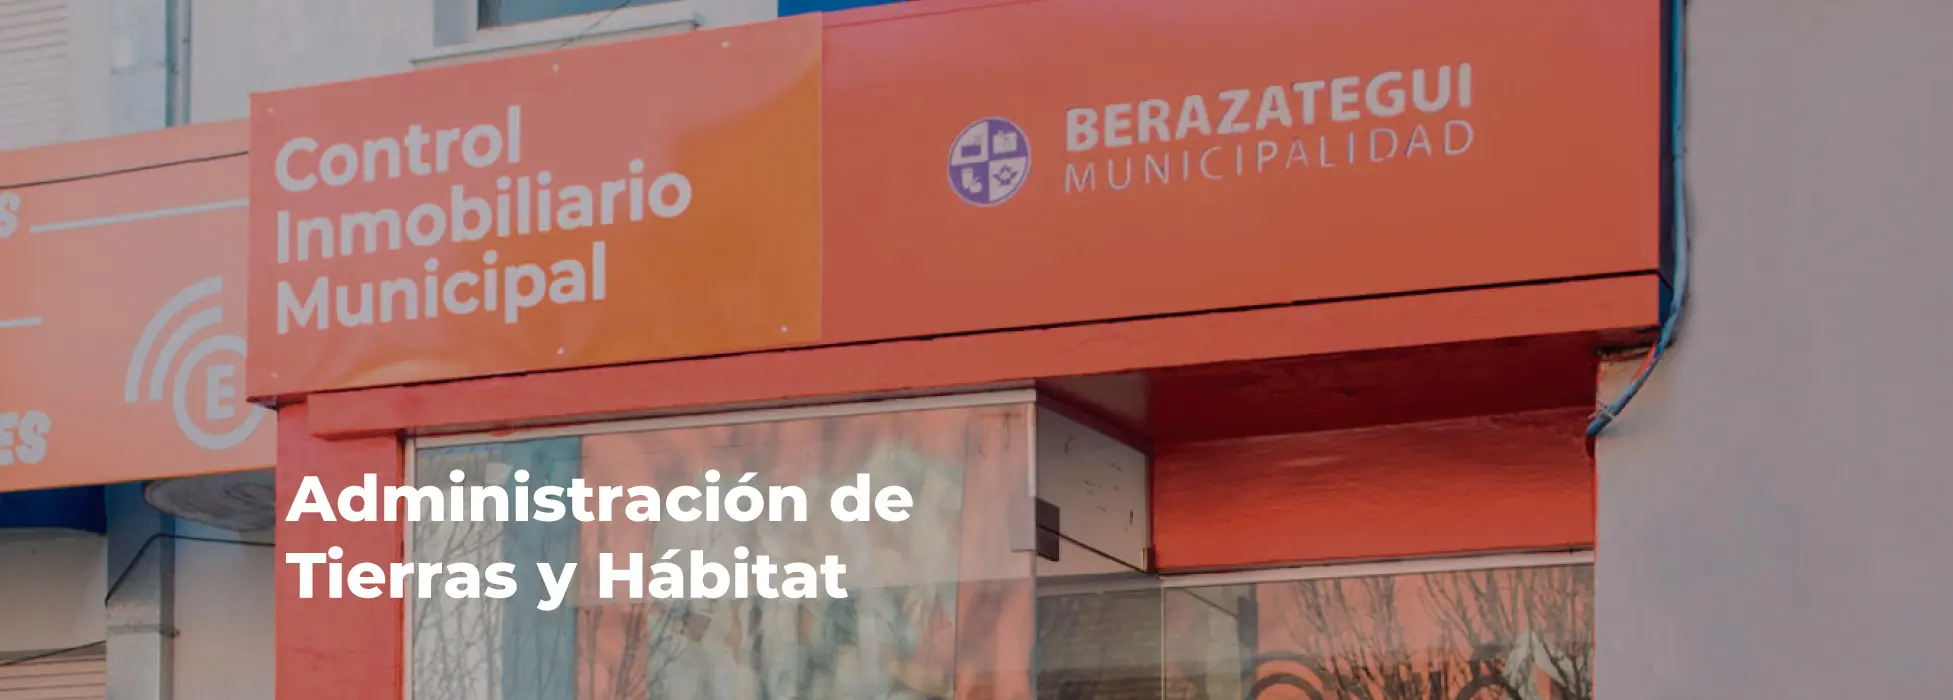 telefono de fiscalizacion municipio de berazategui - Cuál es el 0800 de la Municipalidad de Berazategui